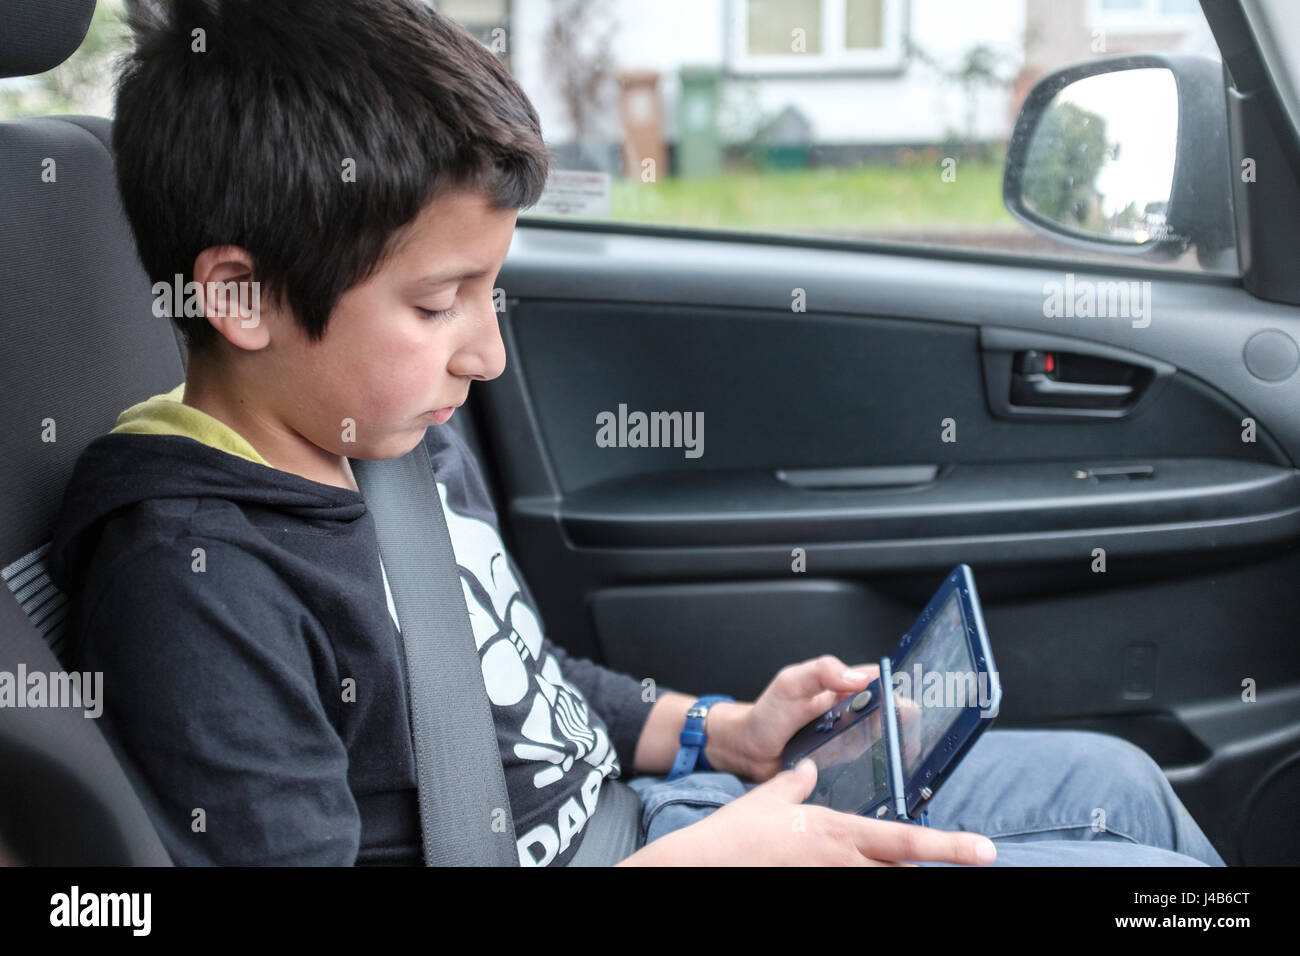 Junge, 10 Jahre alt, spielt Computerspiel in Auto, UK Stockfoto